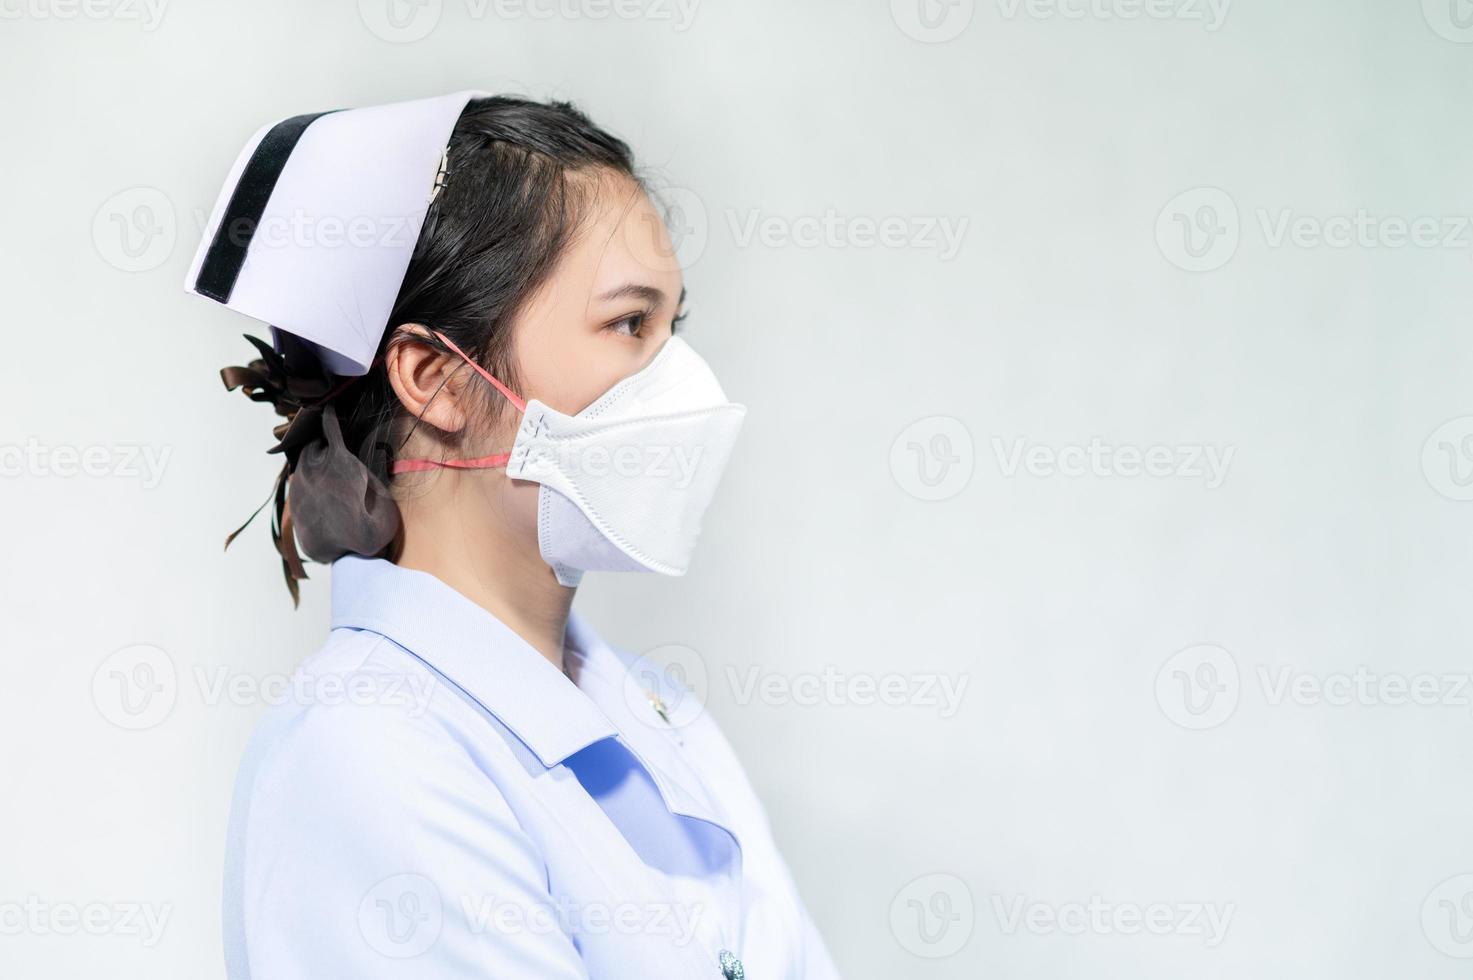 les infirmières portent des masques pour se protéger du coronavirus covid19 photo